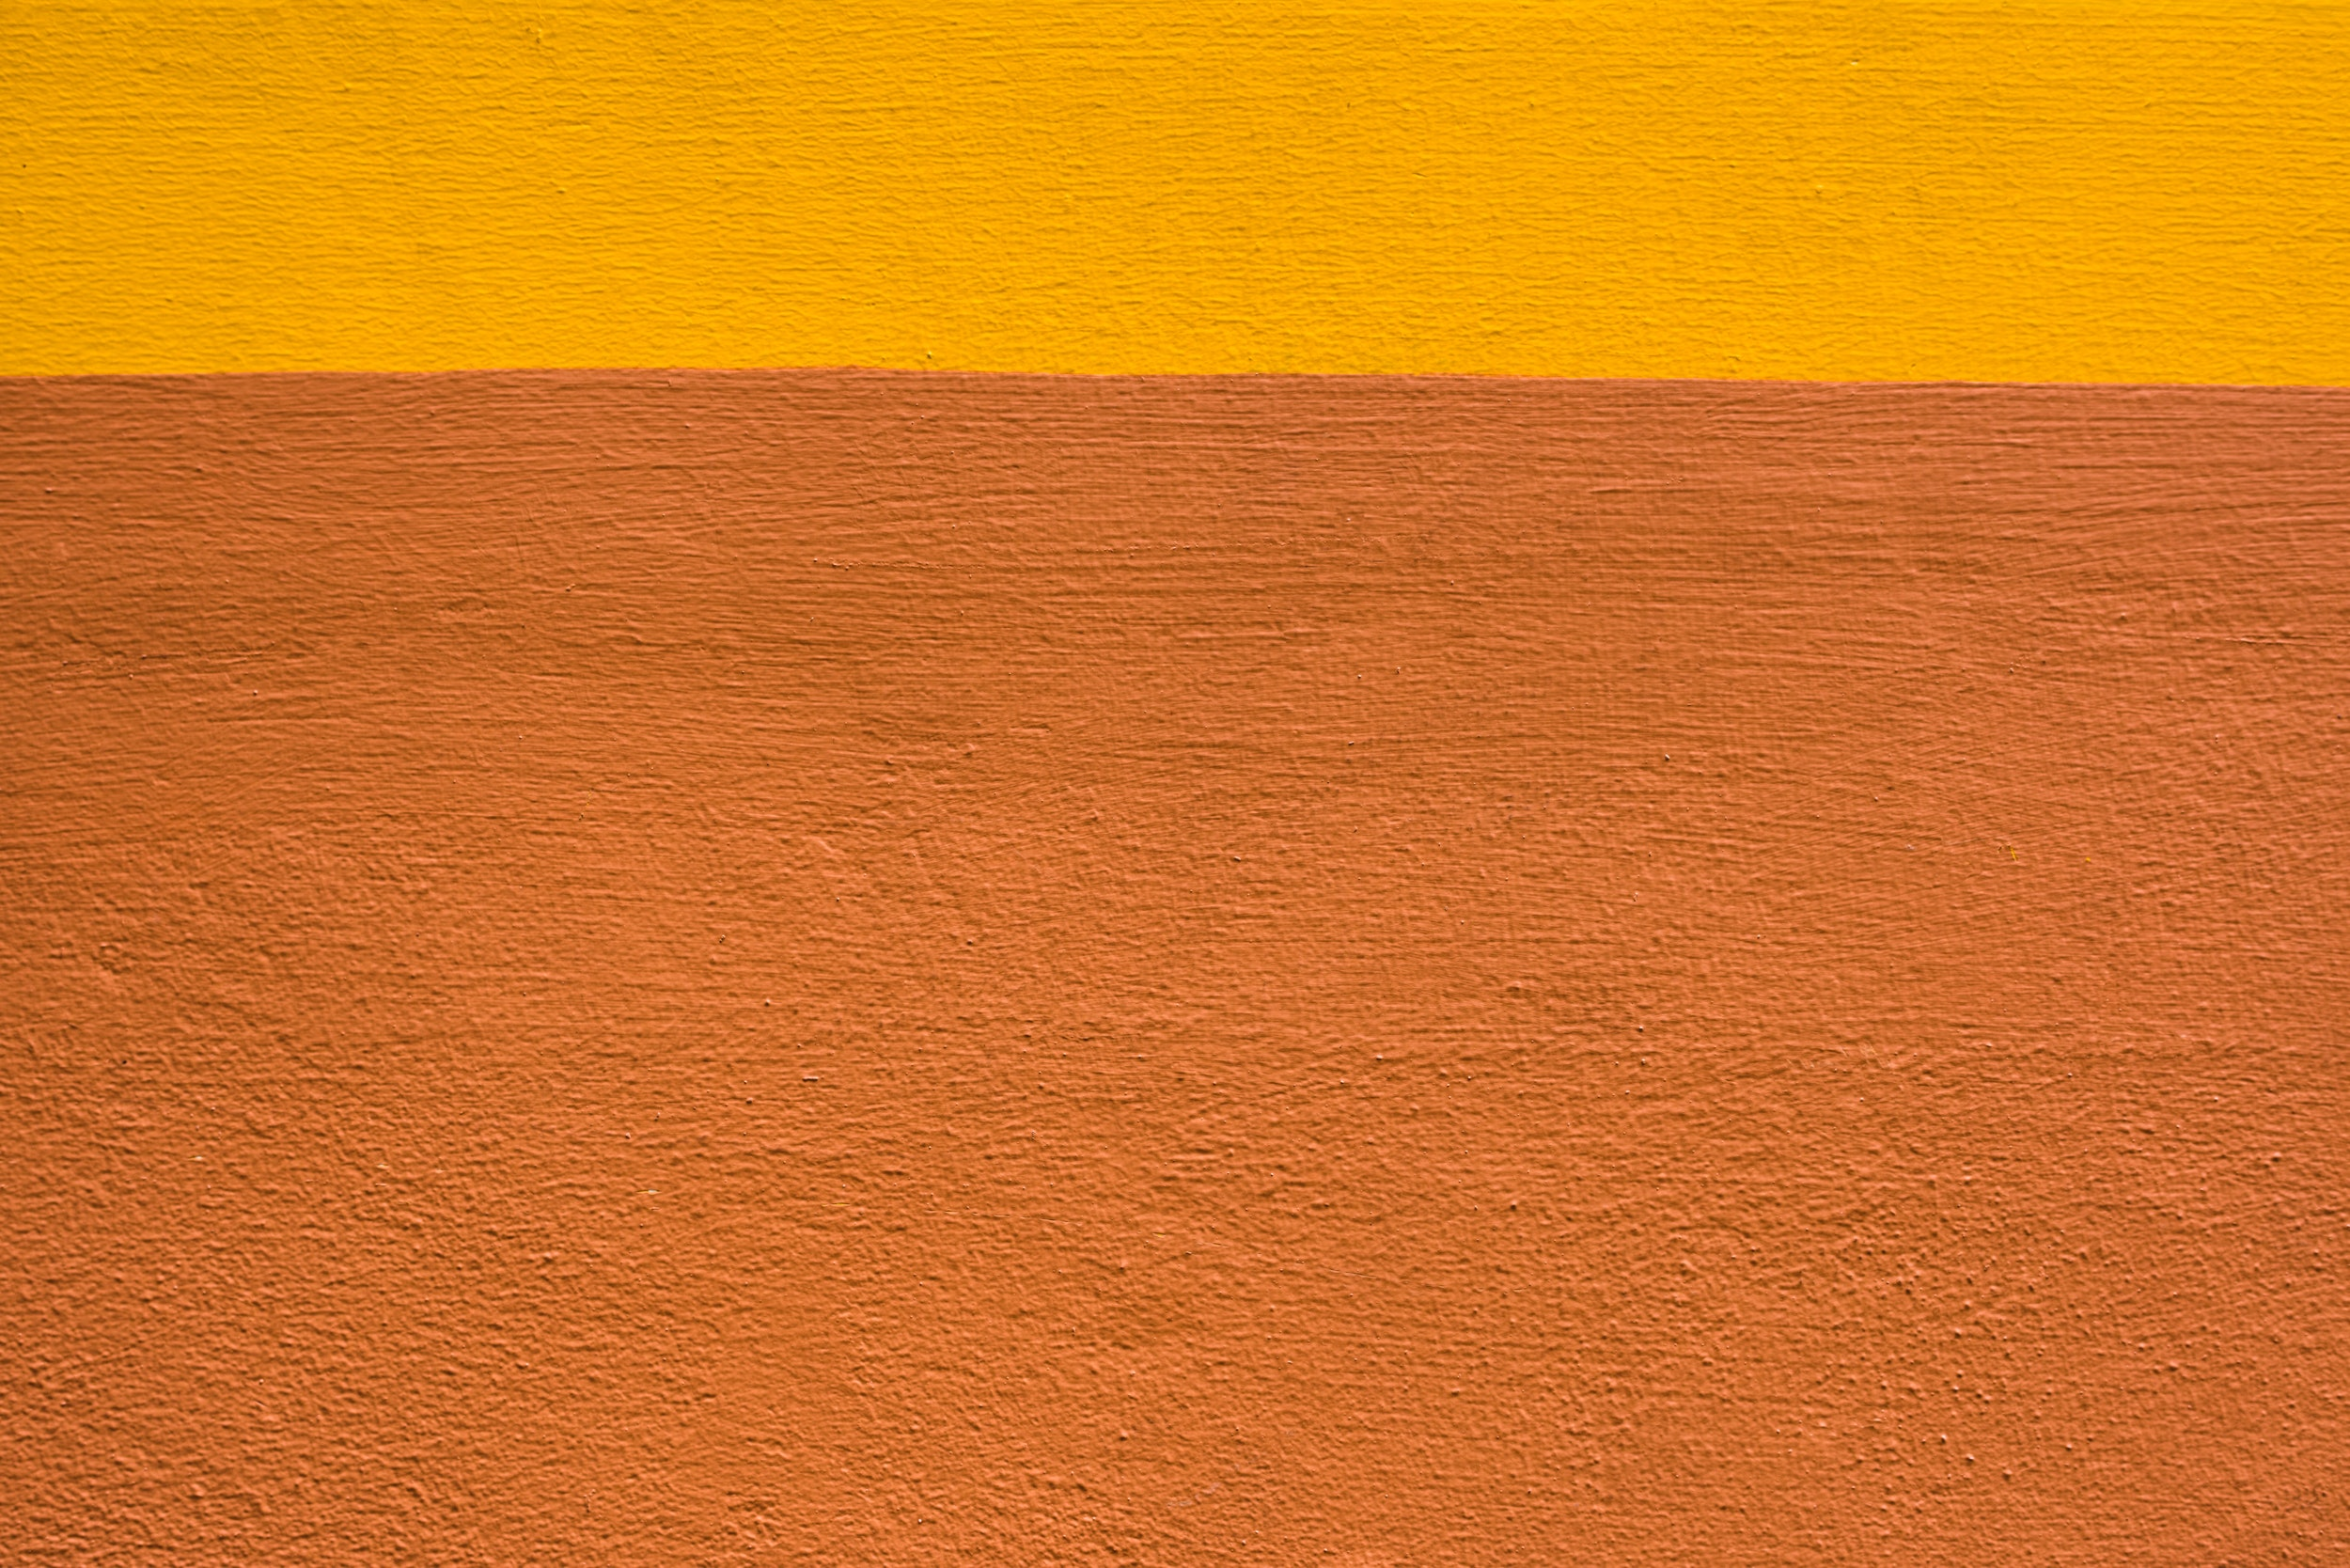 Большой коричневый желтый. Желто-коричневый цвет. Желтокоричнеквый фон. Текстура оранжевого бетона. Желтая поверхность.